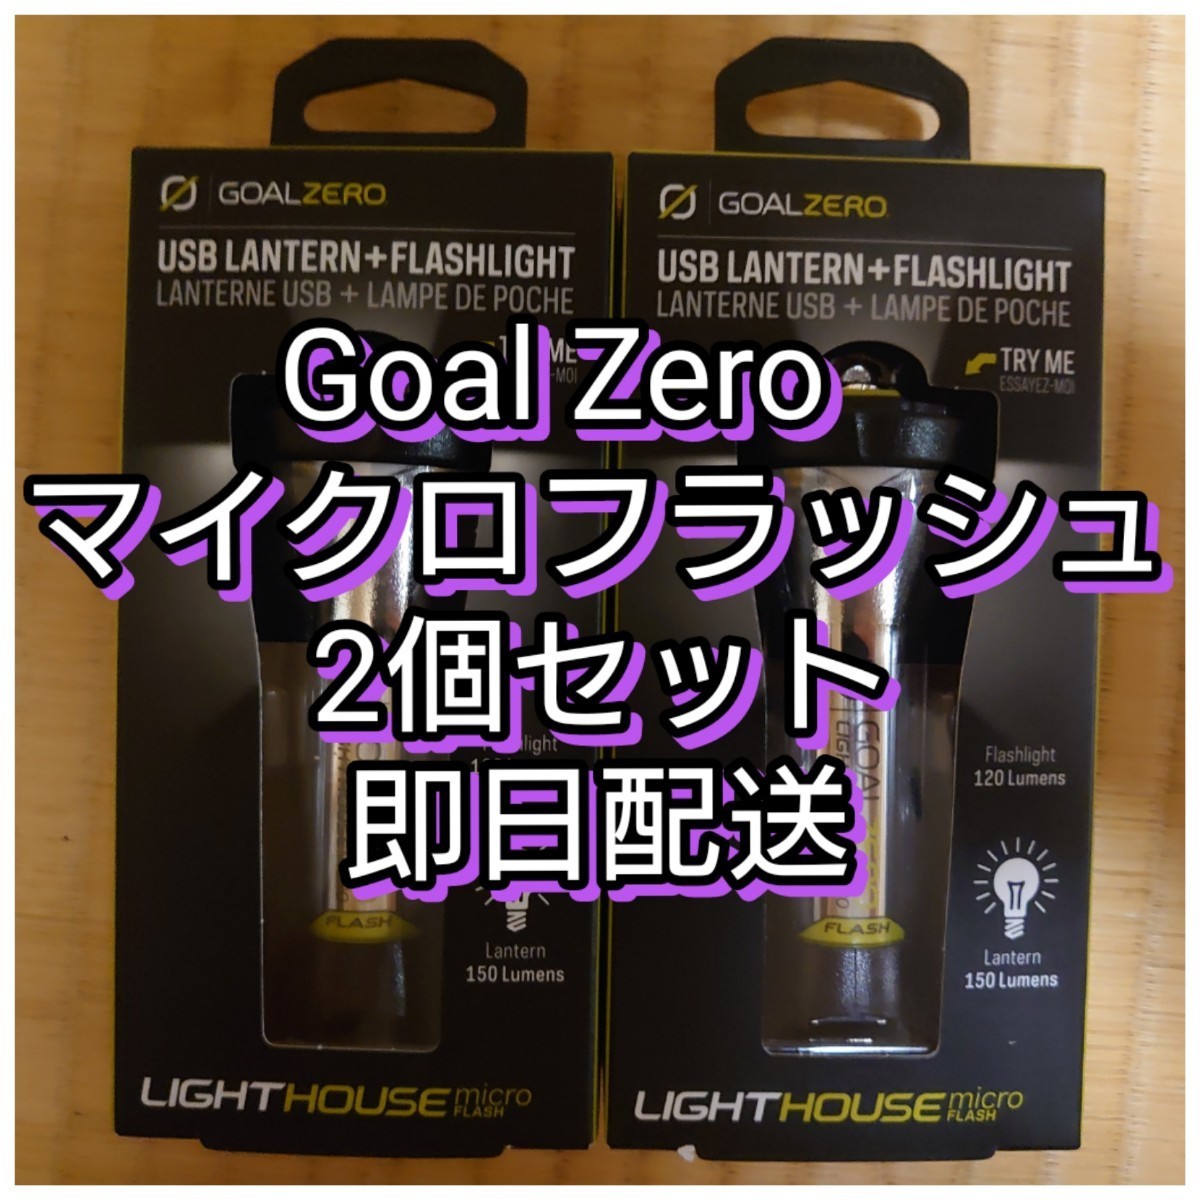 0円 税込 ゴールゼロ マイクロフラッシュ goal zero micro flash 2個